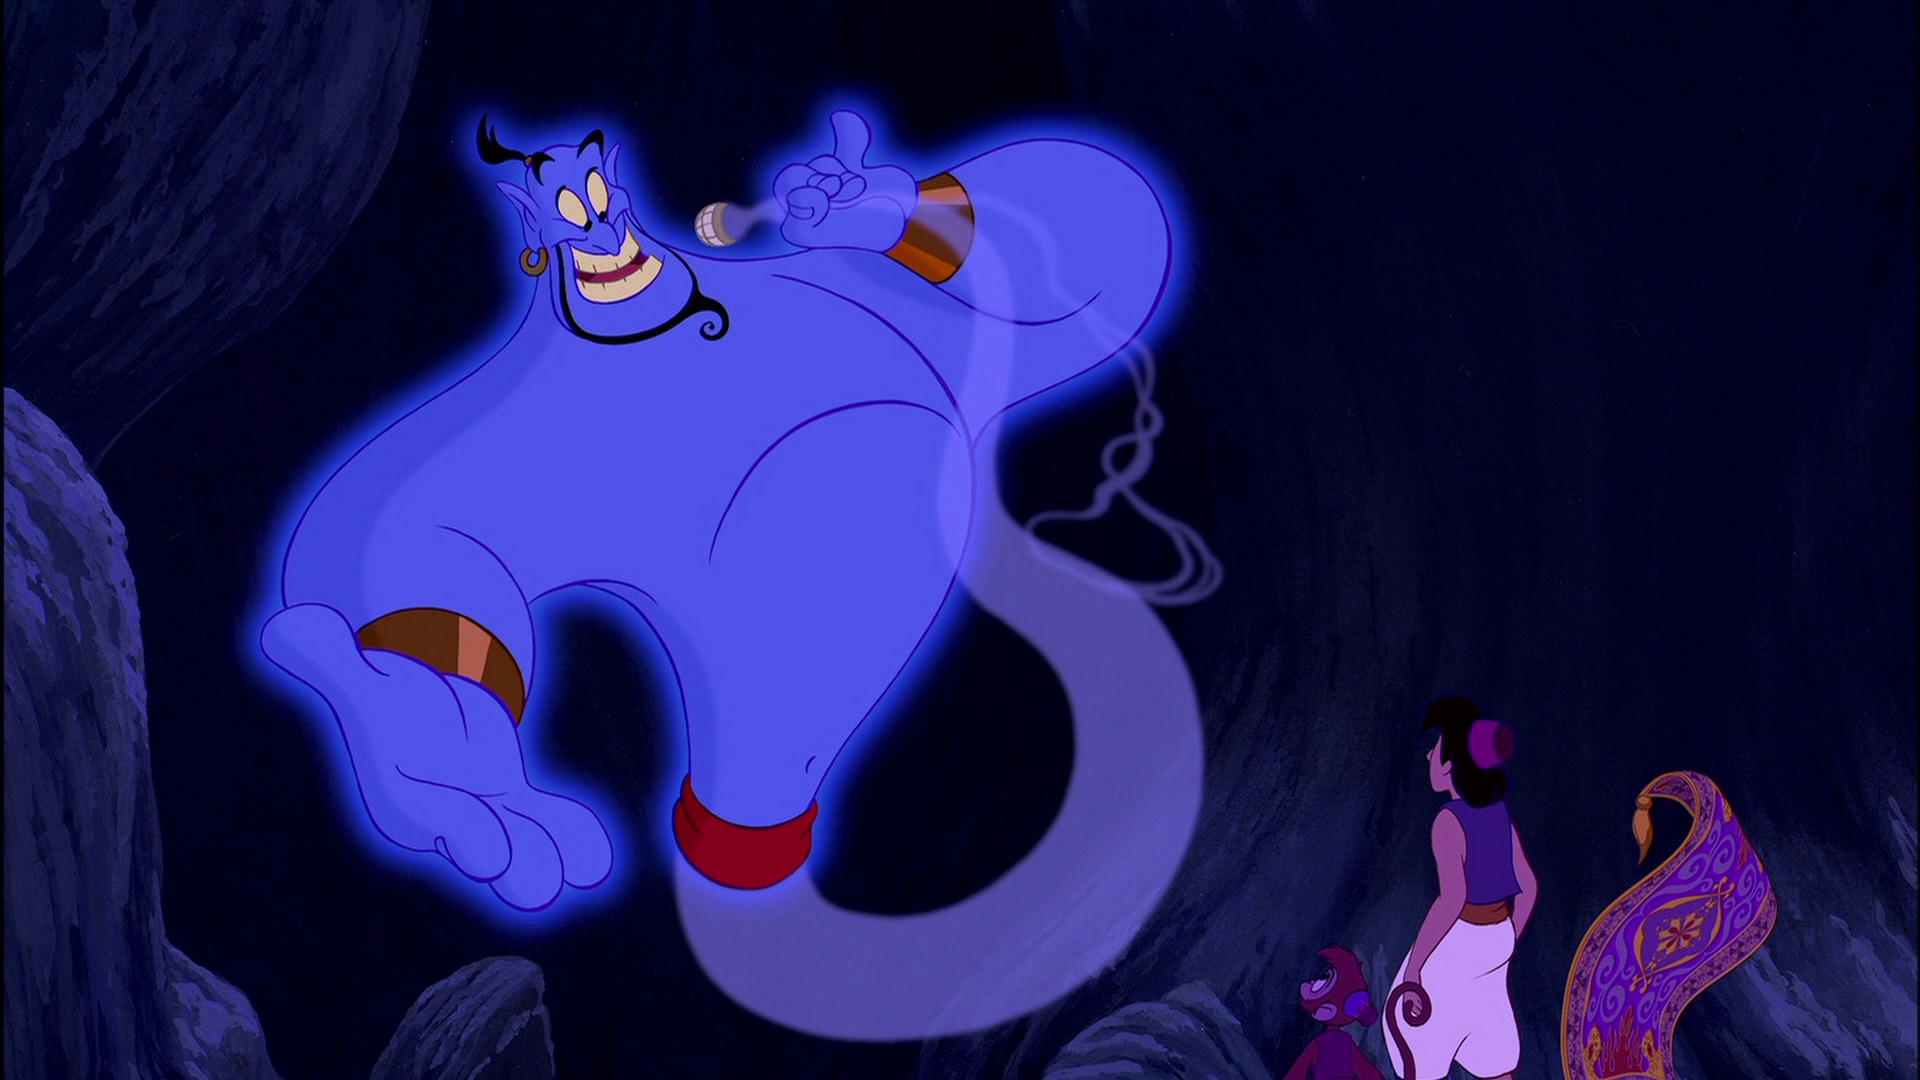 Aladdin' Genie